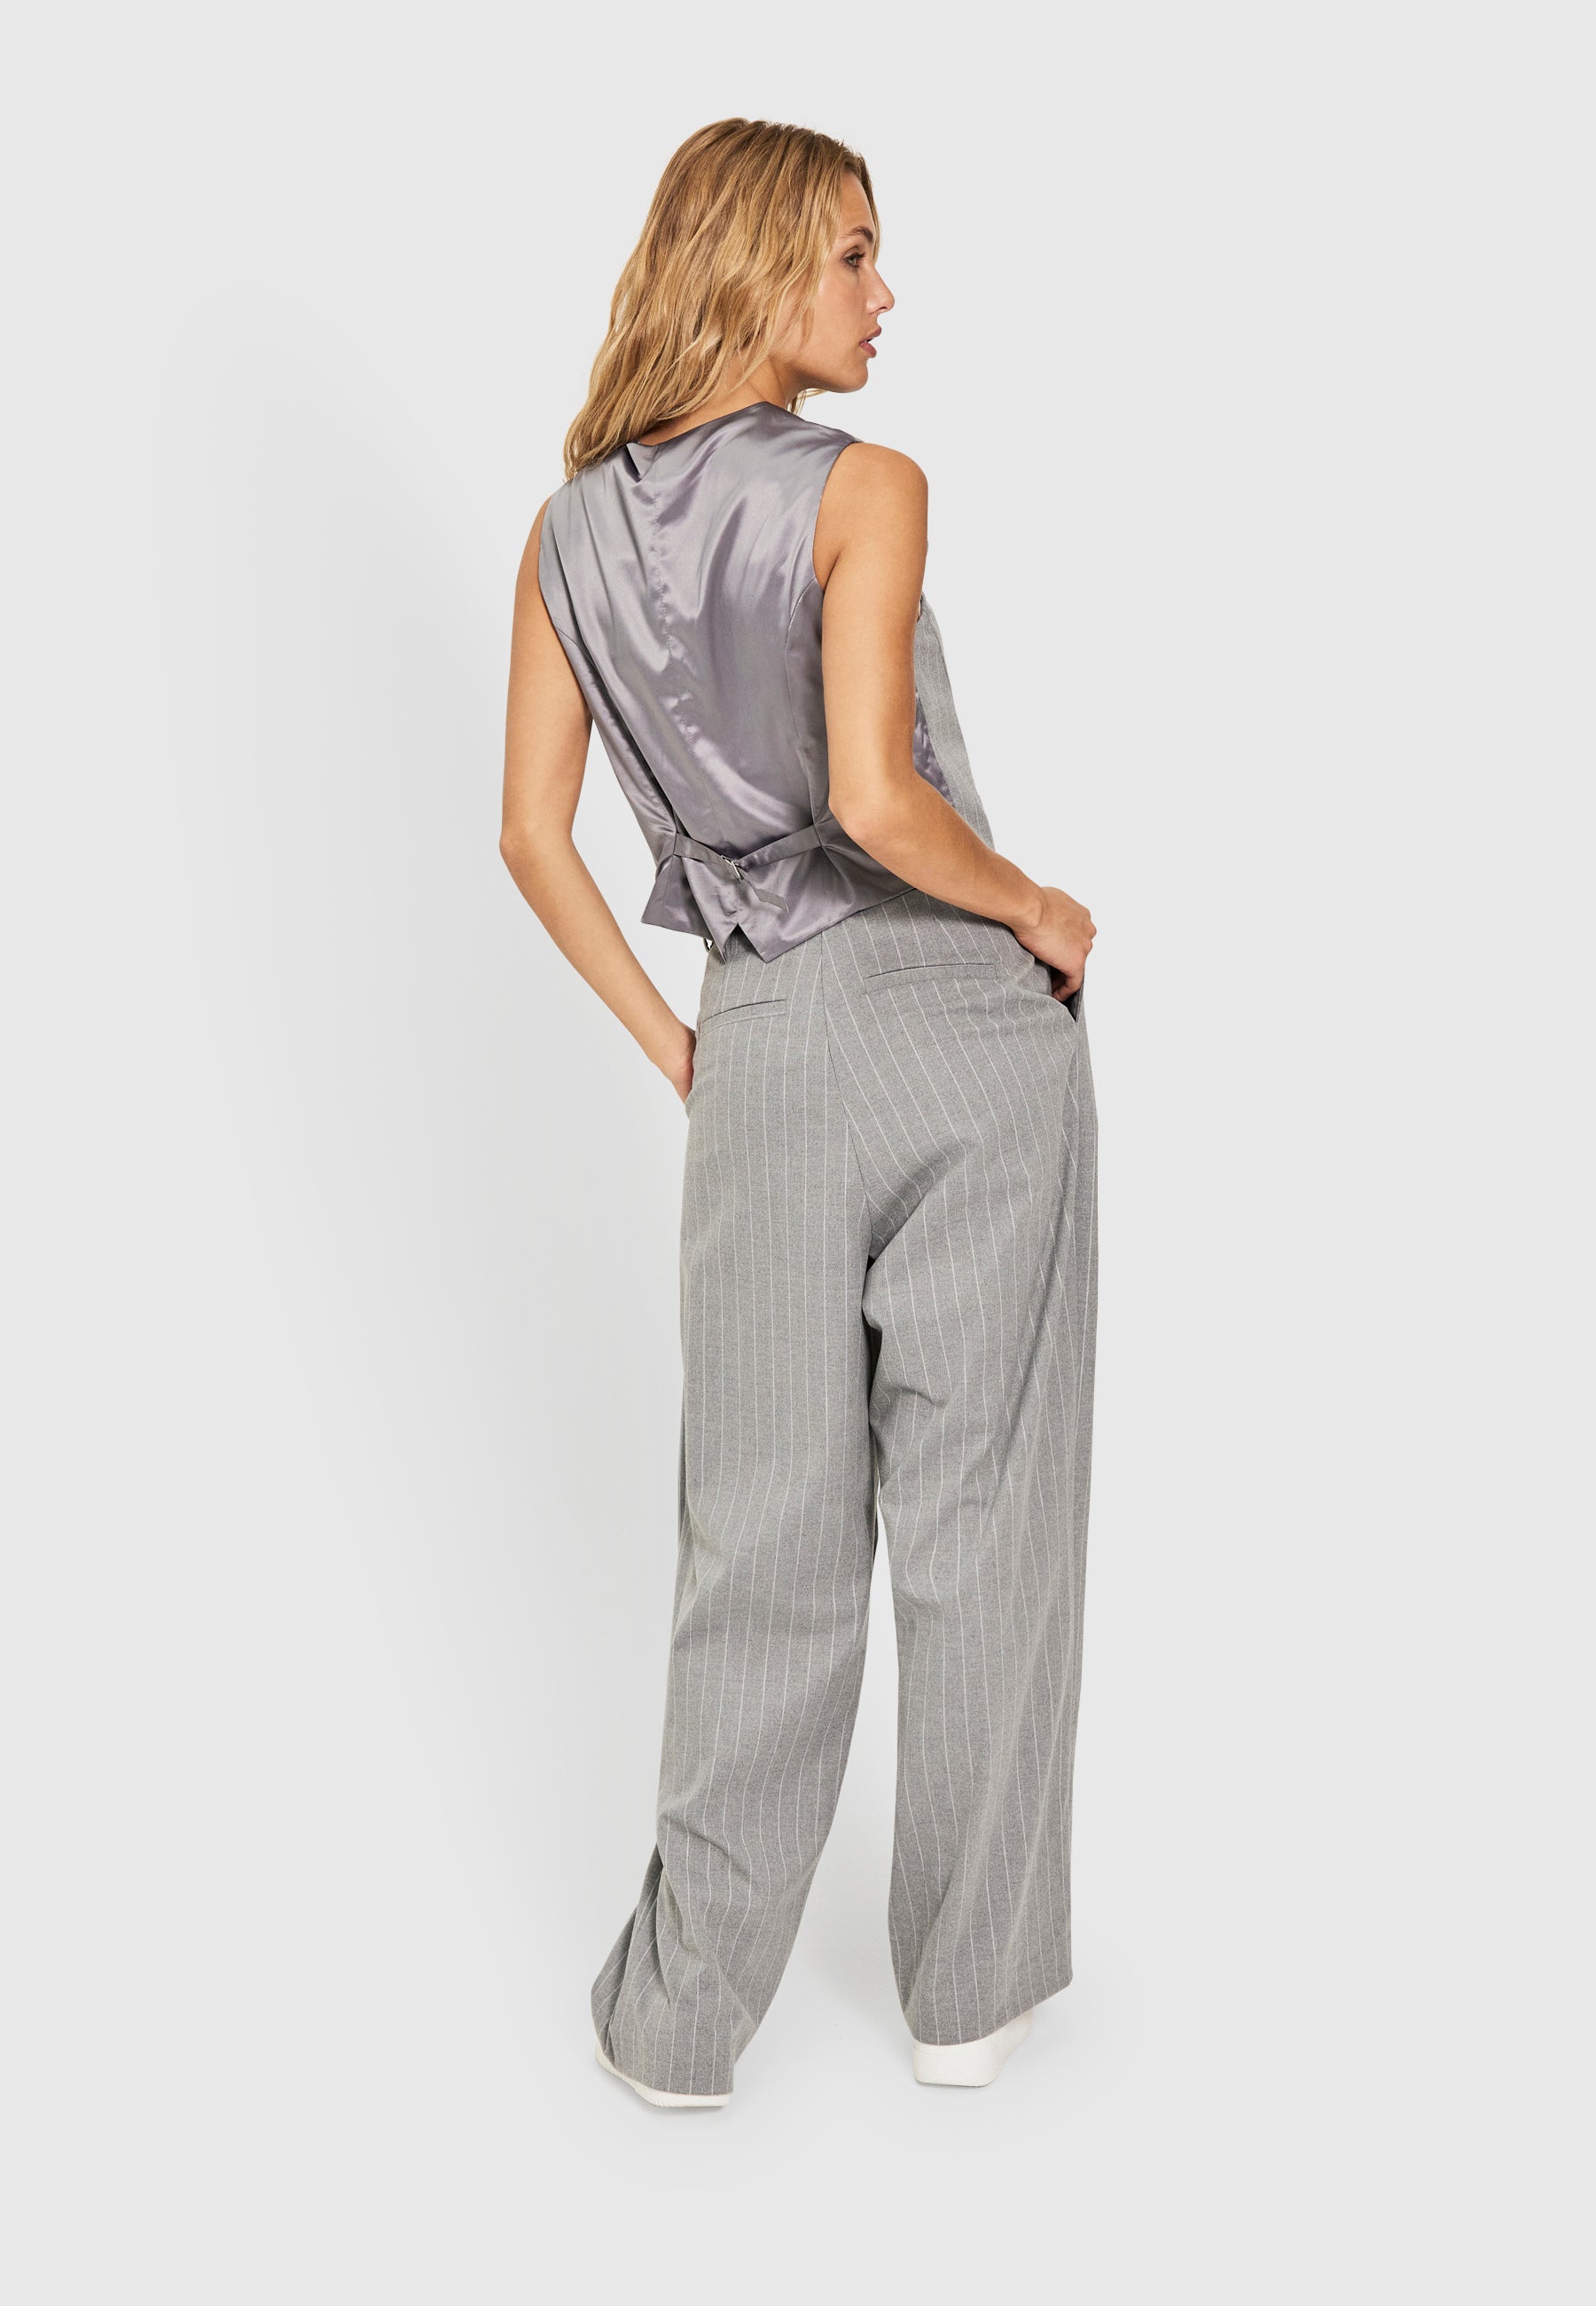 Norr  LAU tailor pants / women